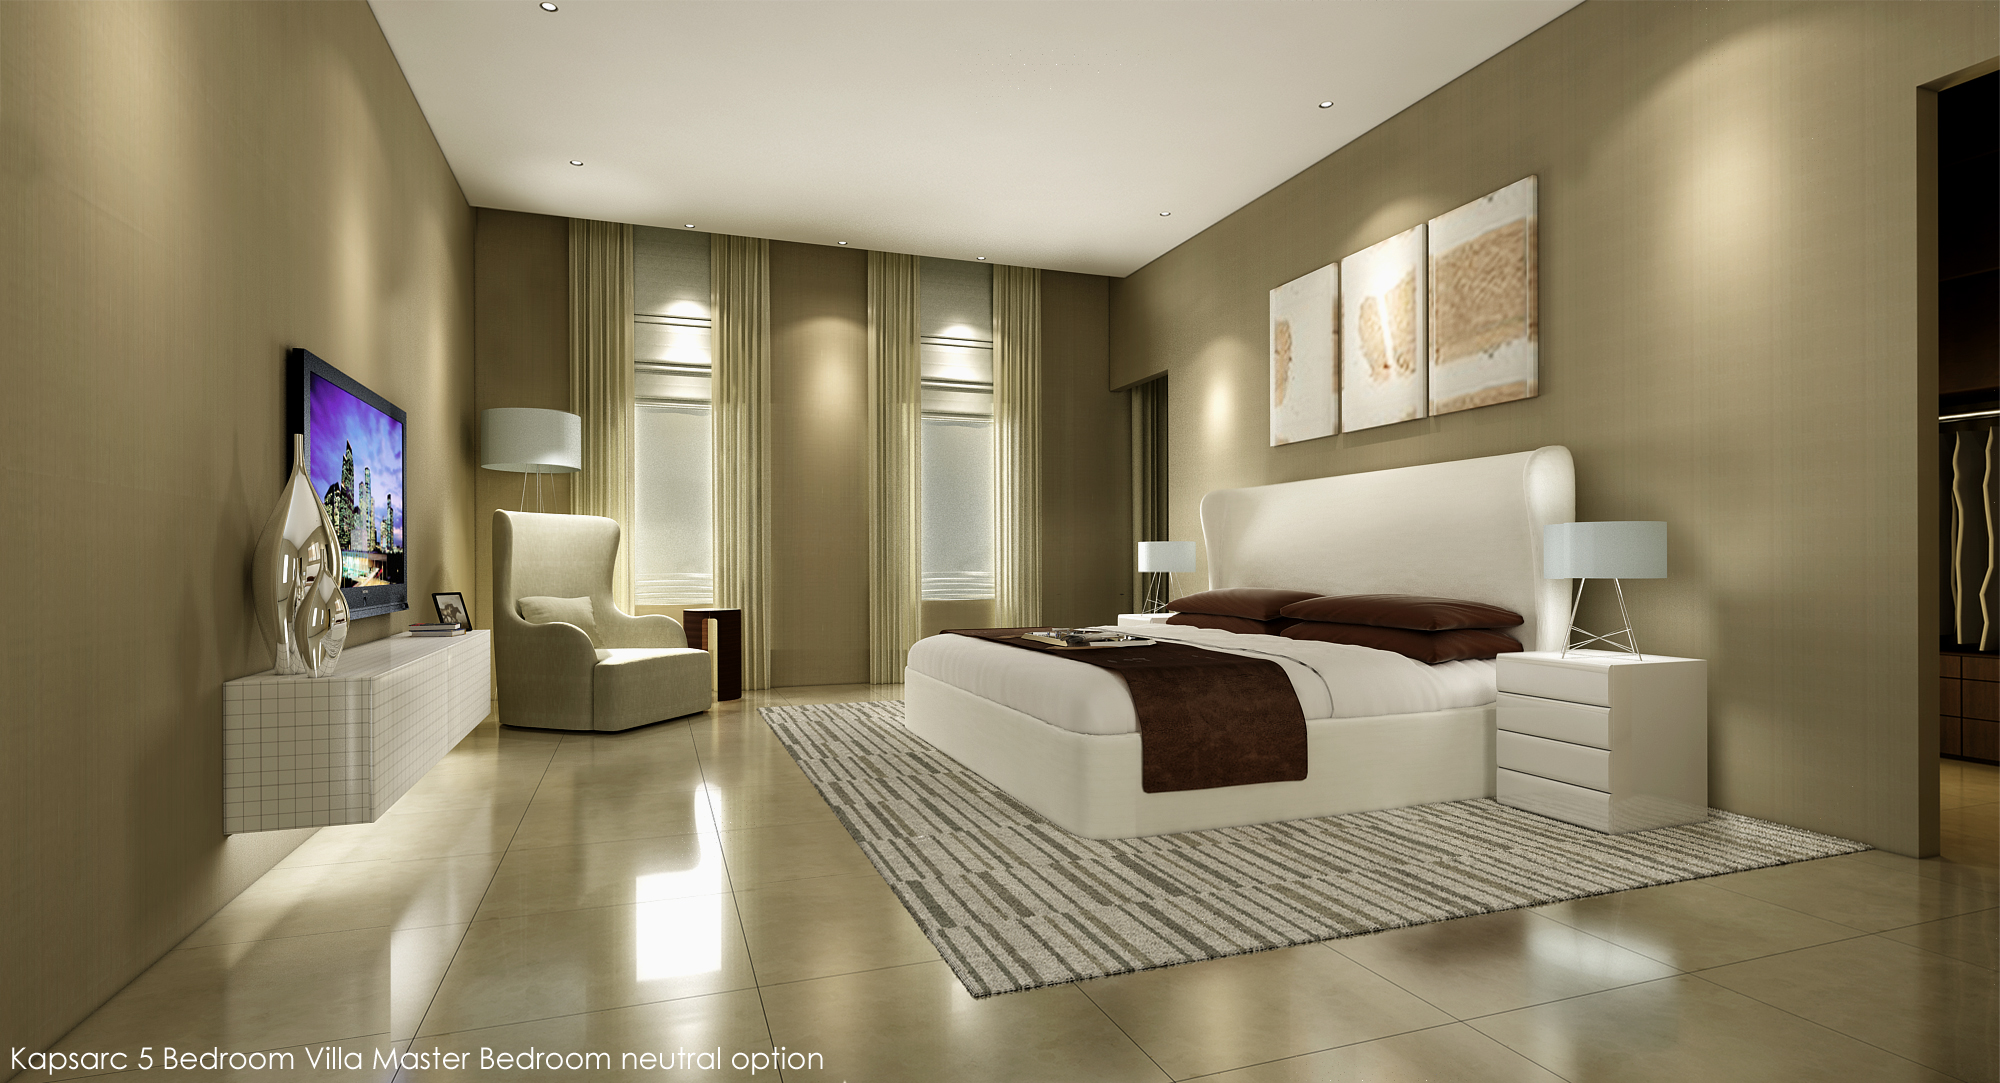 Kapsarc 5 Bedroom Villa Master Bedroom neutral option.jpg